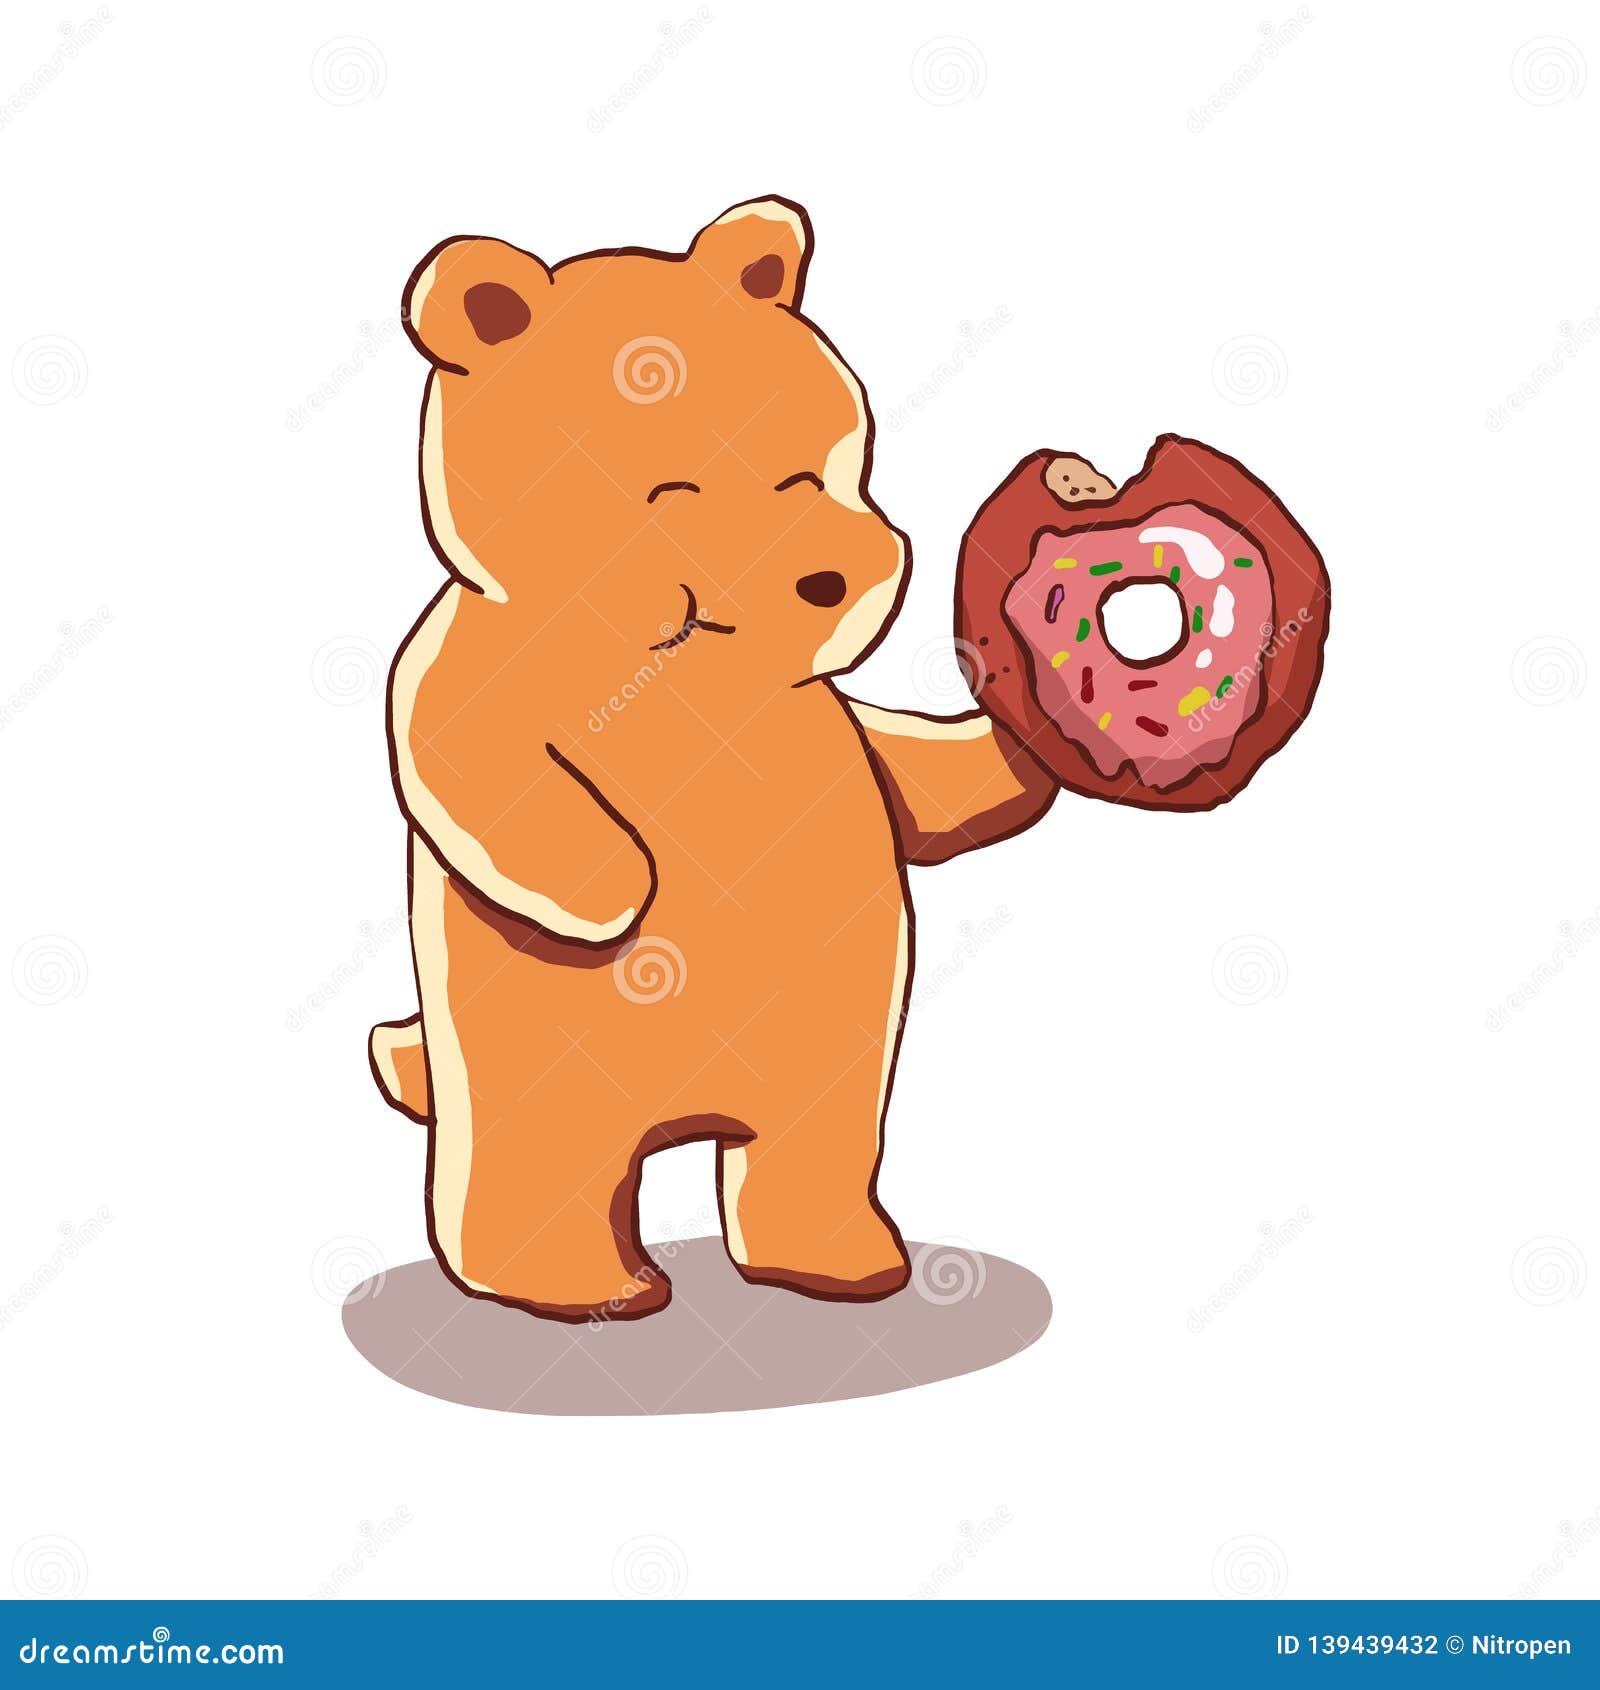 Bear eating donut cartoon stock vector. Illustration of bear - 139439432